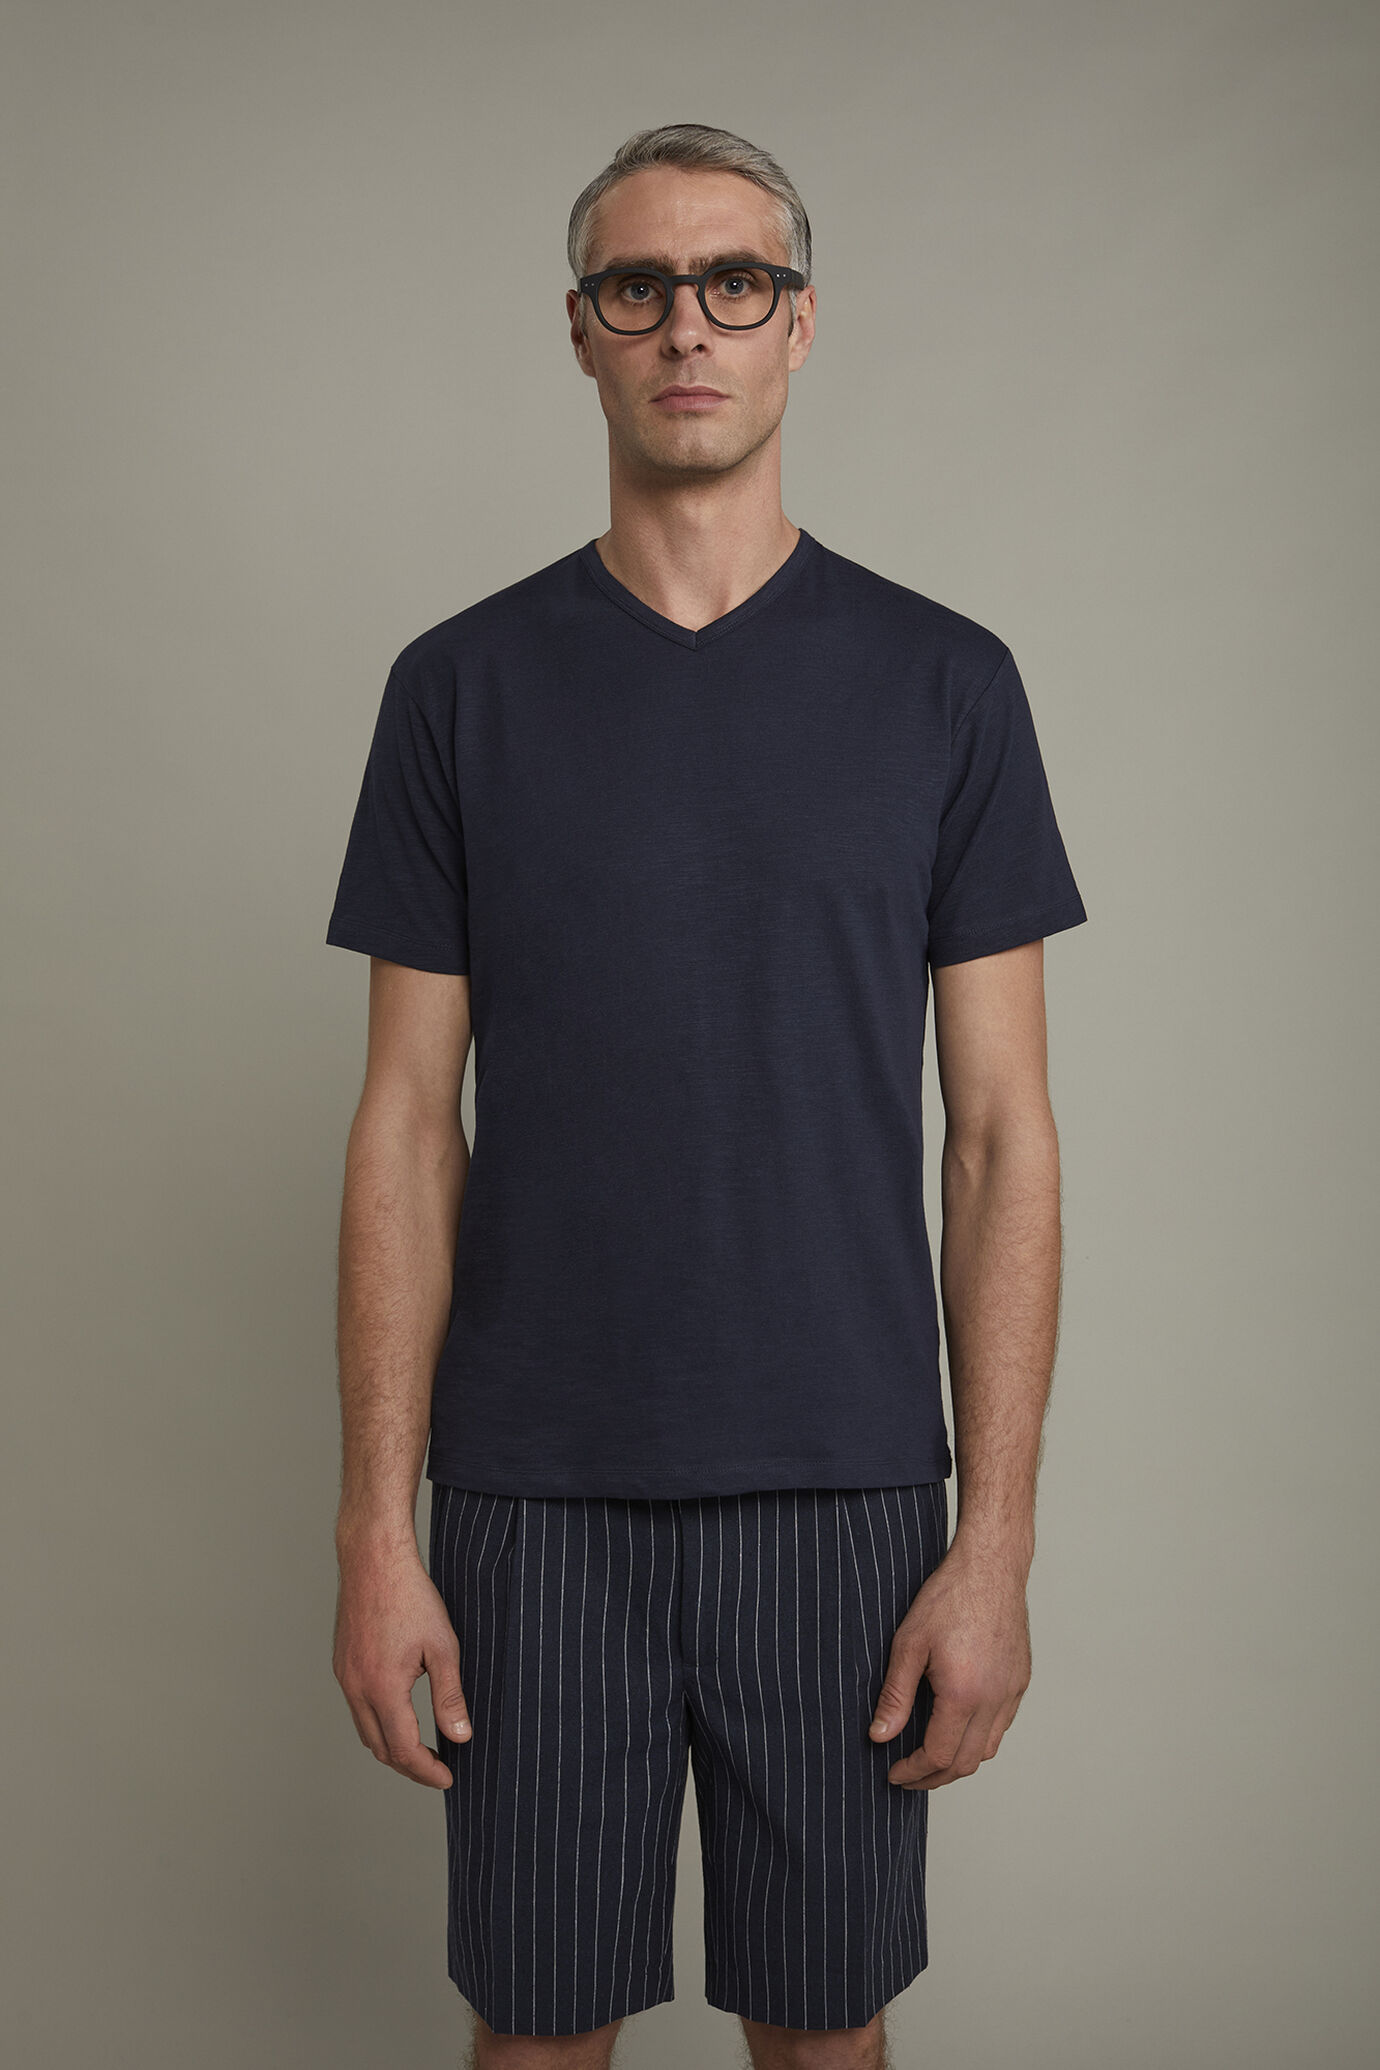 Herren-T-Shirt mit V-Ausschnitt aus 100 % Slub-Baumwolle in normaler Passform